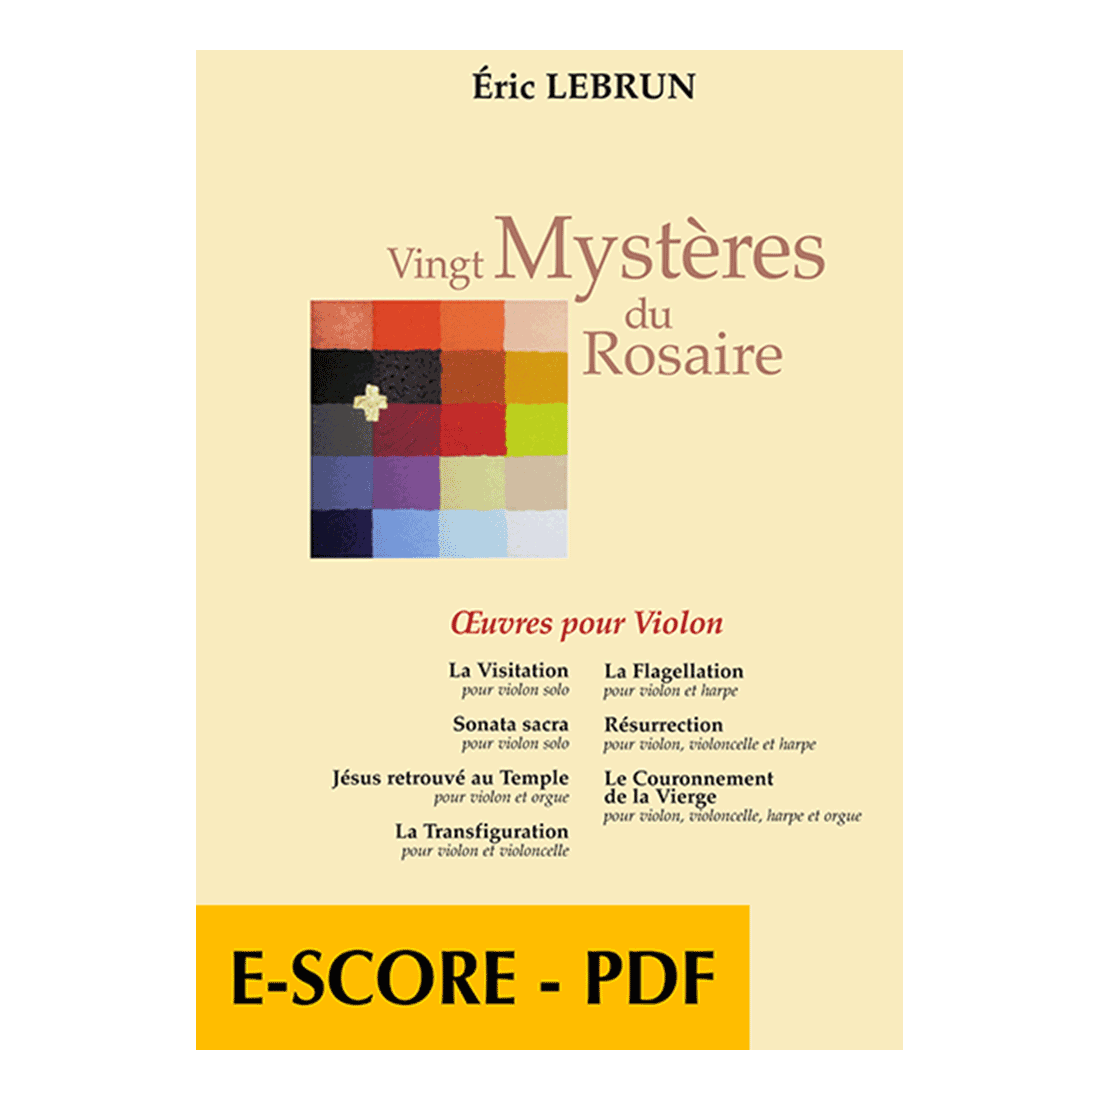 Vingt mystères du Rosaire - Werke für Violine - E-score PDF